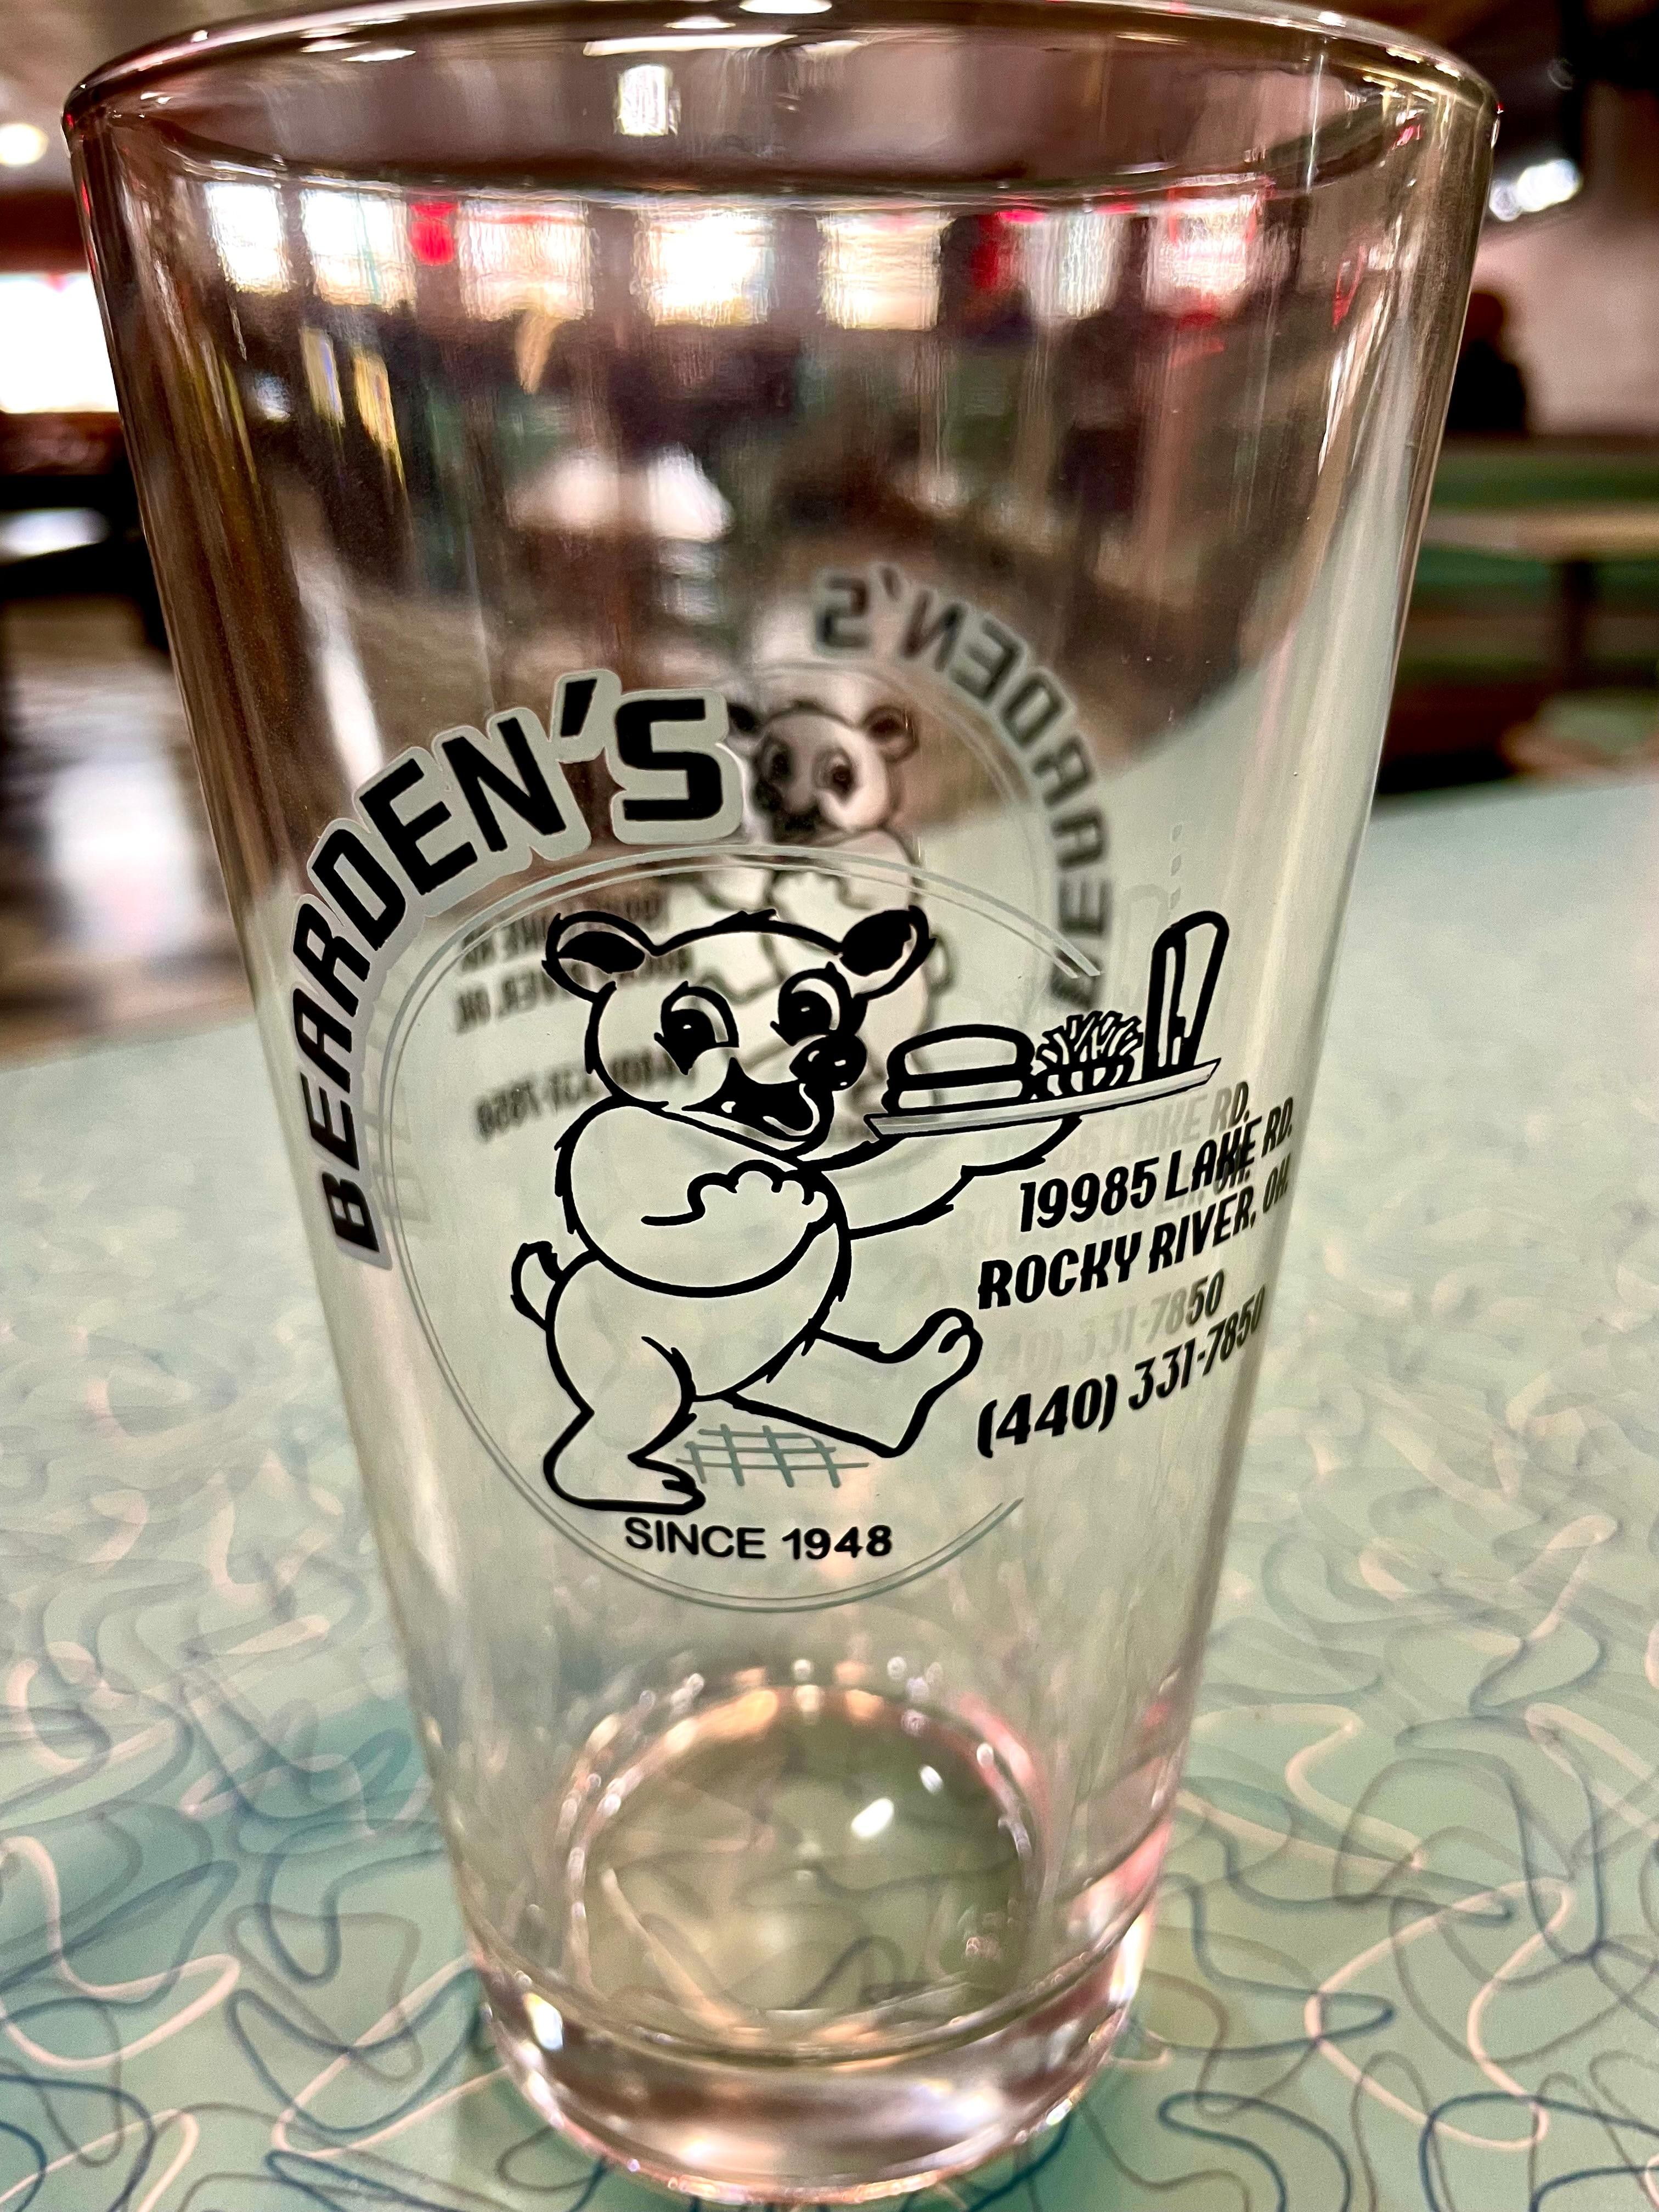 Bearden's beer glass